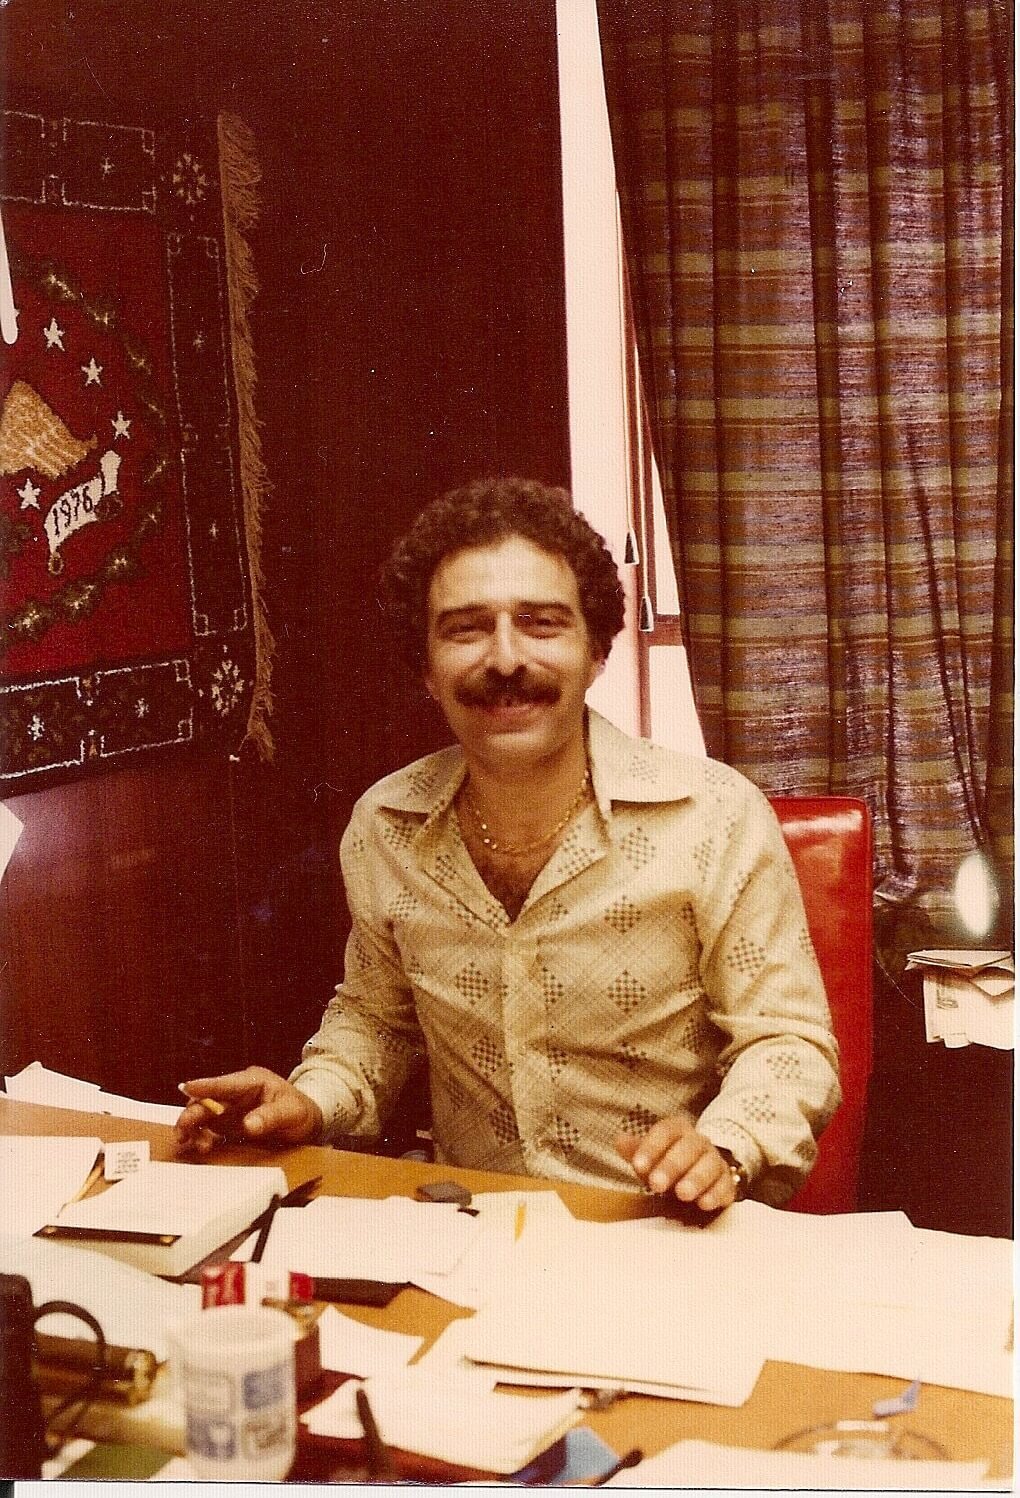 Warren Harris, Swatchtek and Flortek Founder, smiling at the office in 1978.